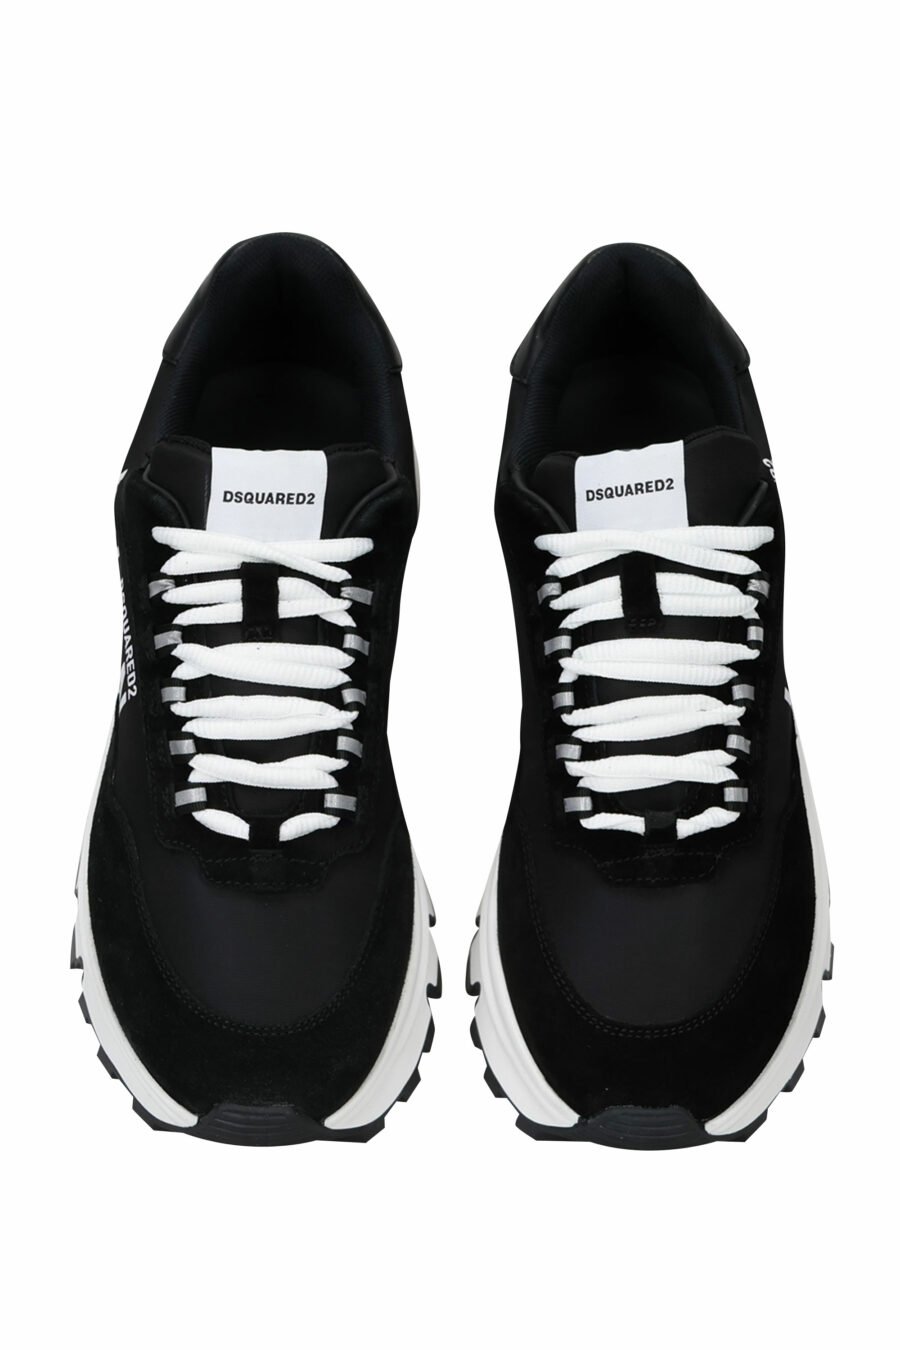 Chaussures noires avec minilogo "icon" et semelle blanche avec chambre à air - 8055777249321 6